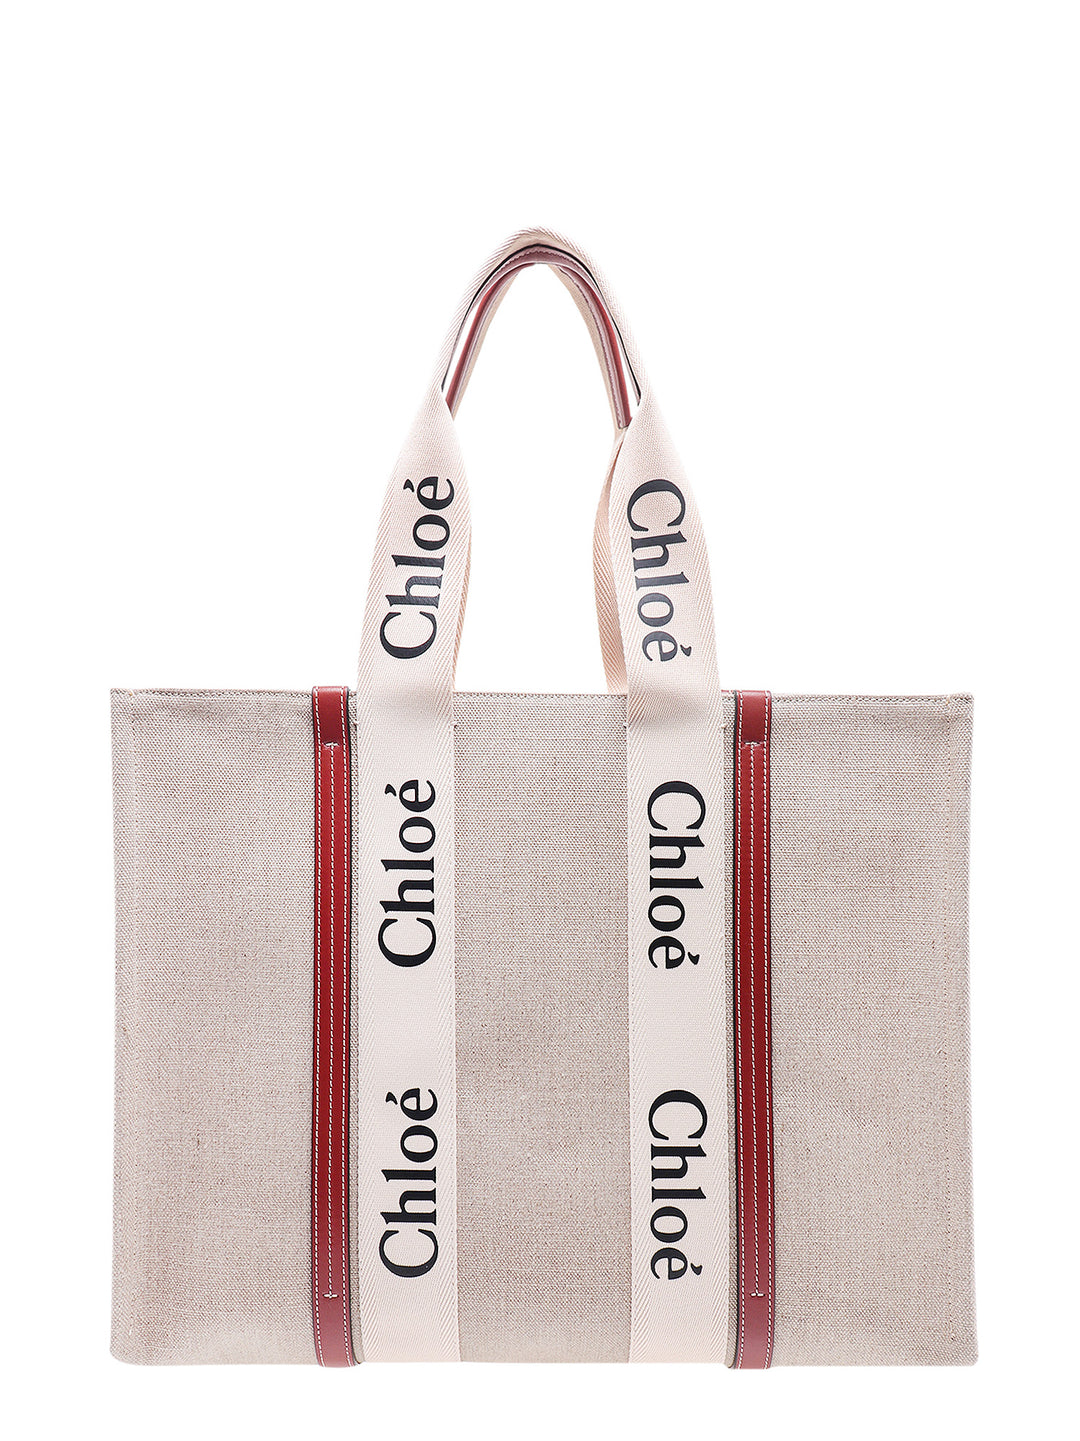 Borsa a spalla in lino con stampa logo.  Questa borsa è realizzata con materiale a minor impatto ambientale